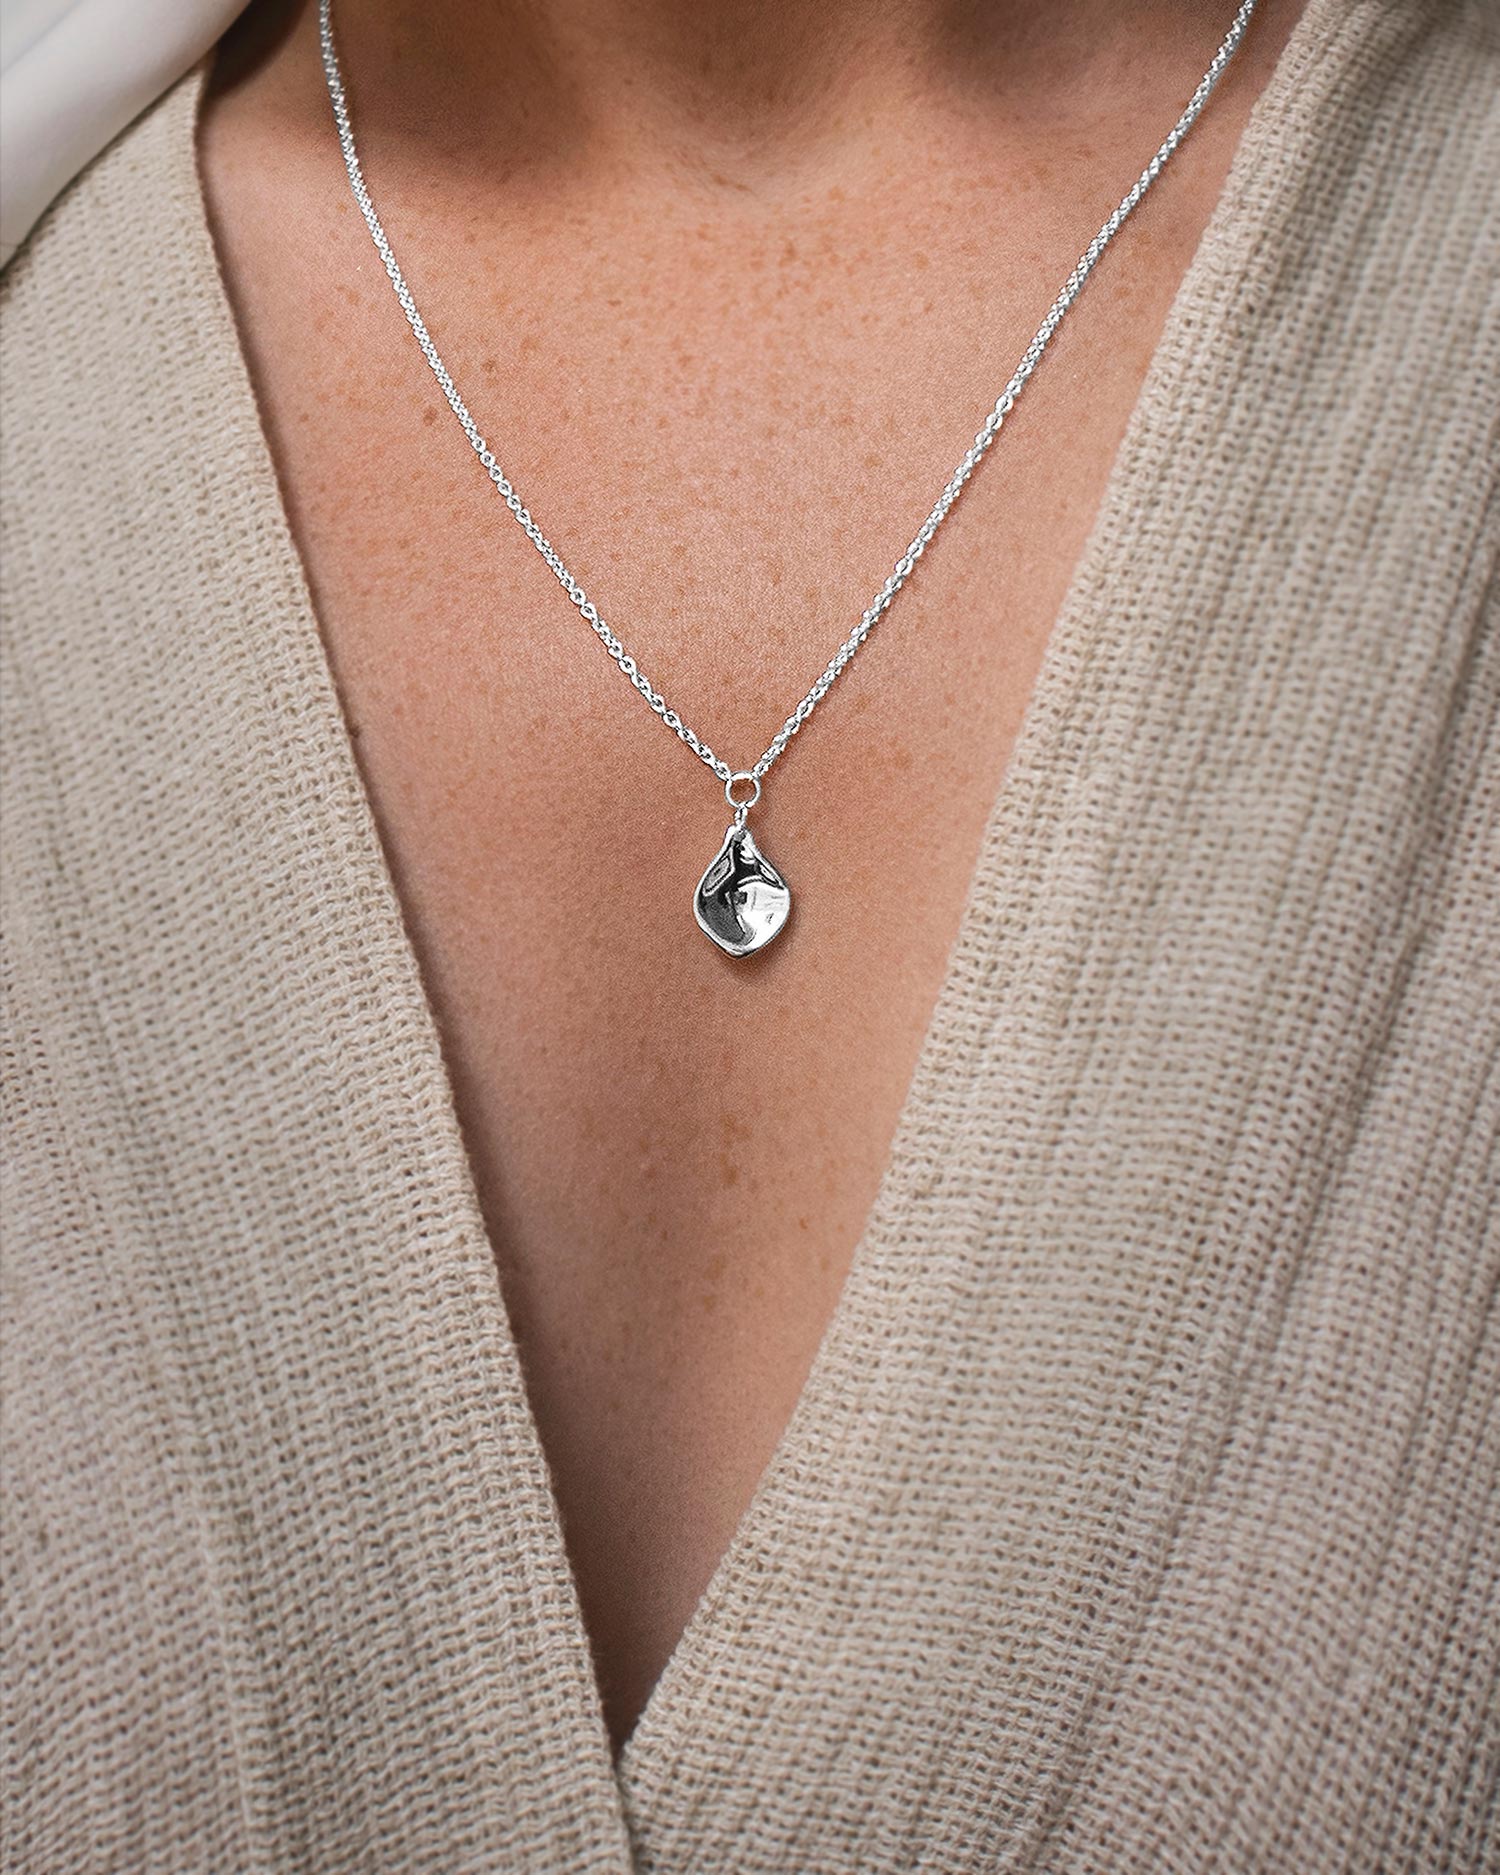 Gaias Grace single necklace silver